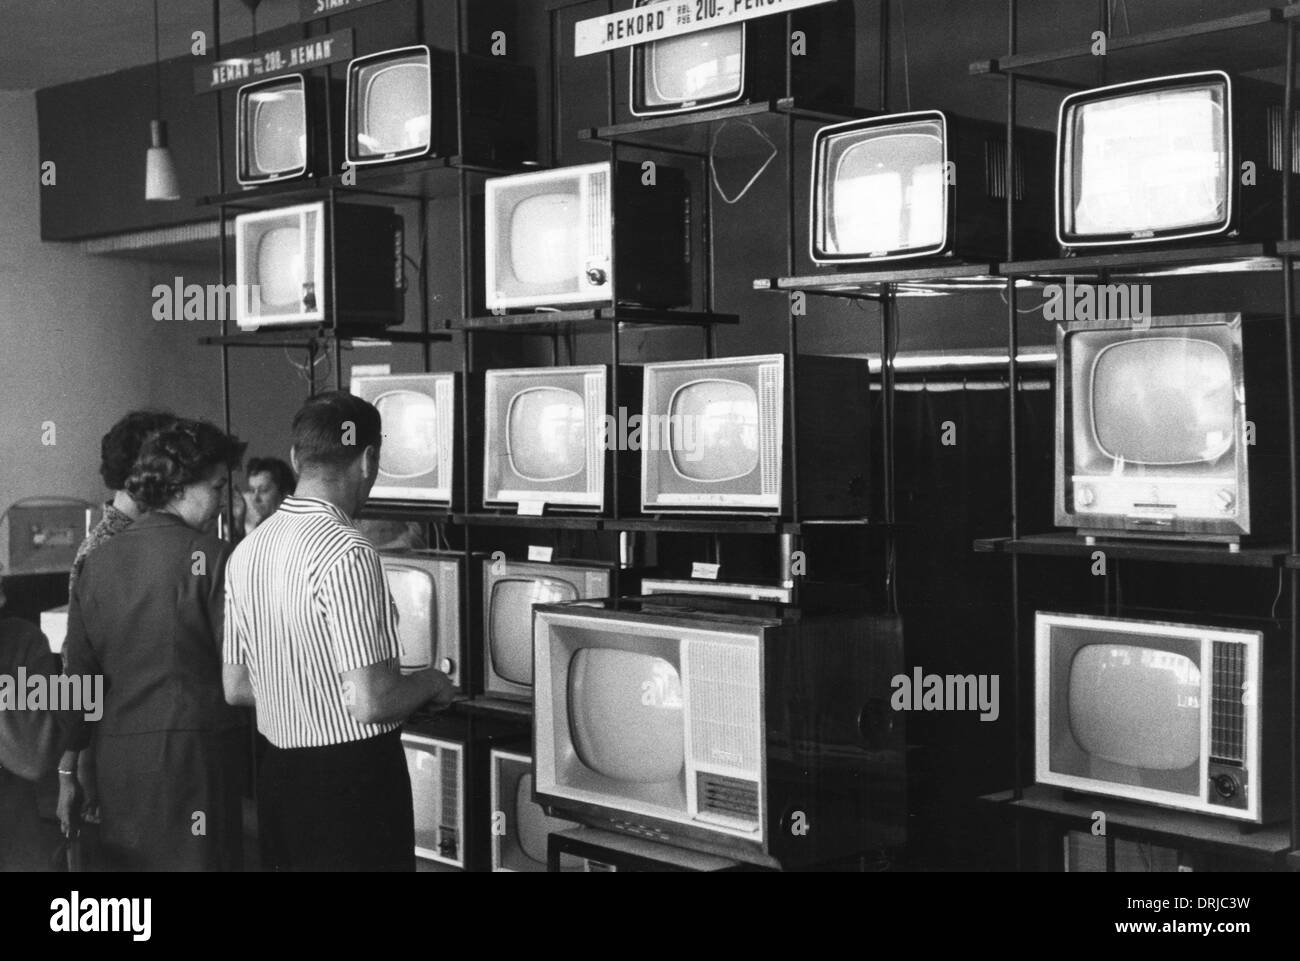 Television shop, Riga, Latvia Stock Photo - Alamy